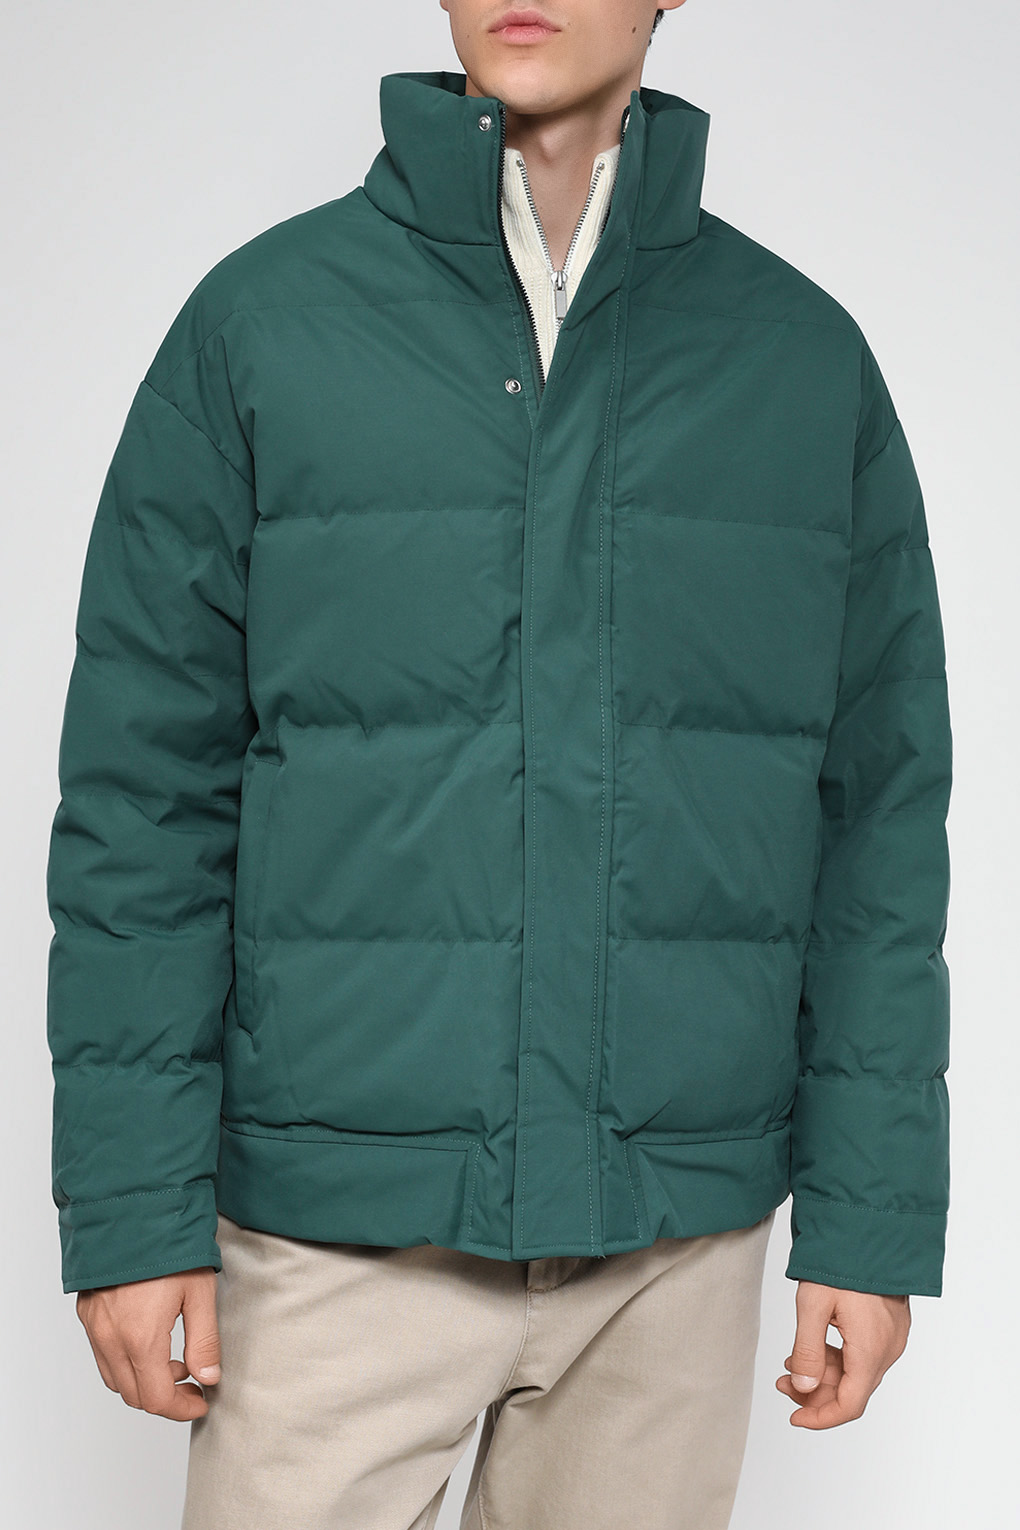 Куртка мужская D.Molina DM23079285-042 зеленая 46 RU